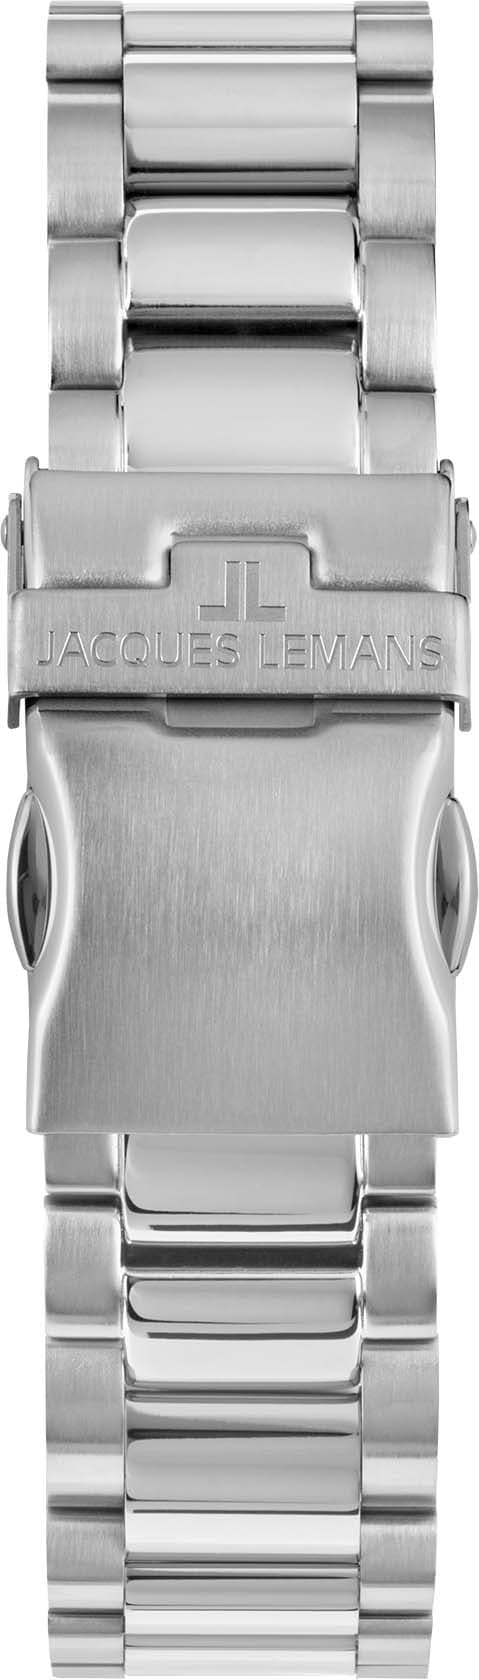 Jacques Lemans Chronograph »Liverpool, 1-2140F« | BAUR online kaufen